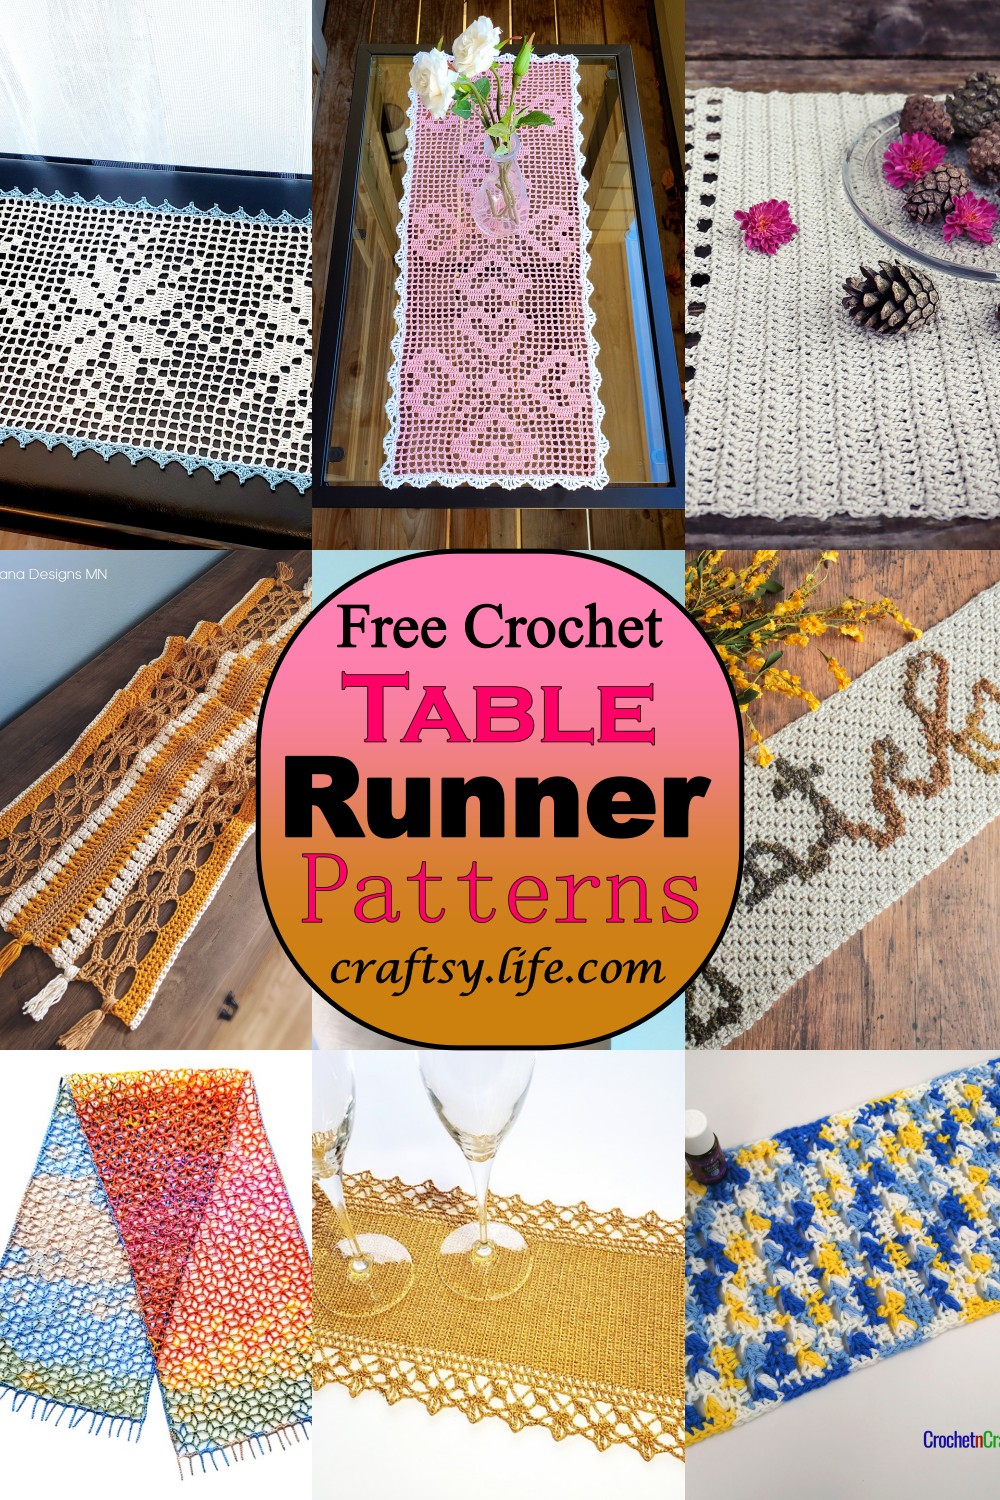 Free Crochet Table Runner Patterns